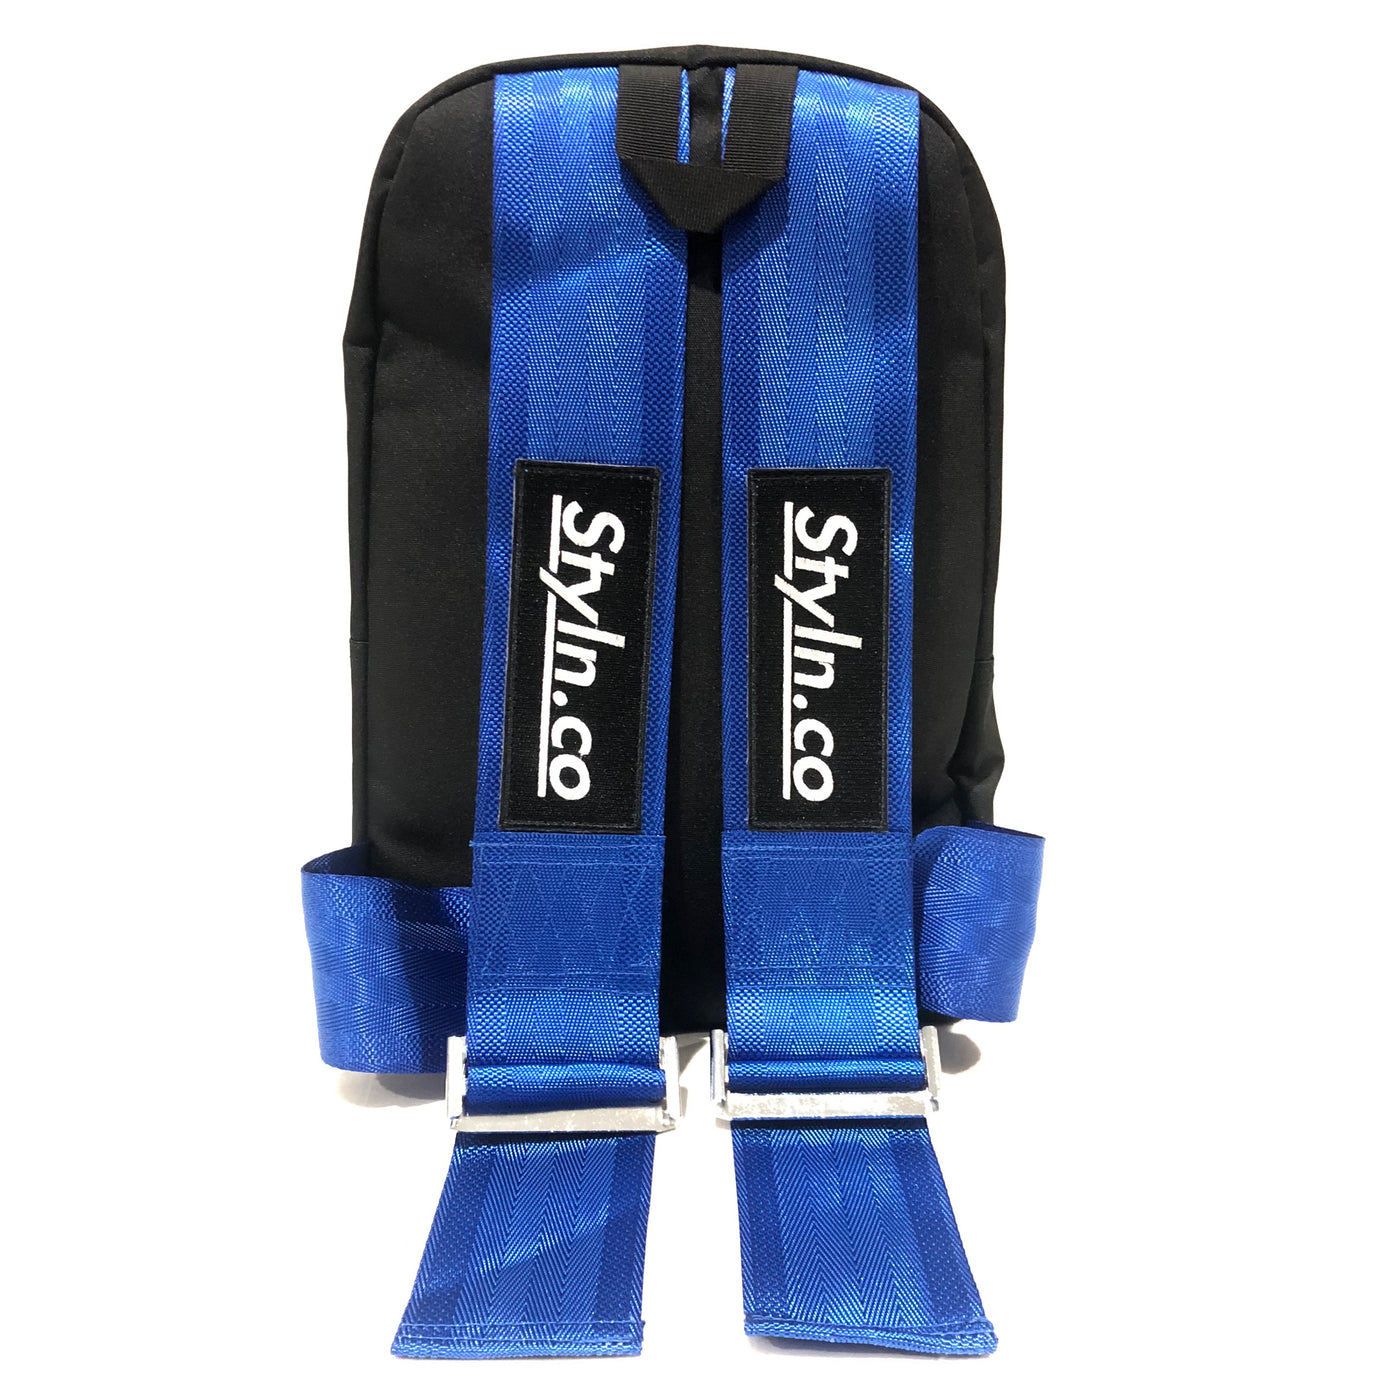 STYLN® Backpack Bride Racing Blue